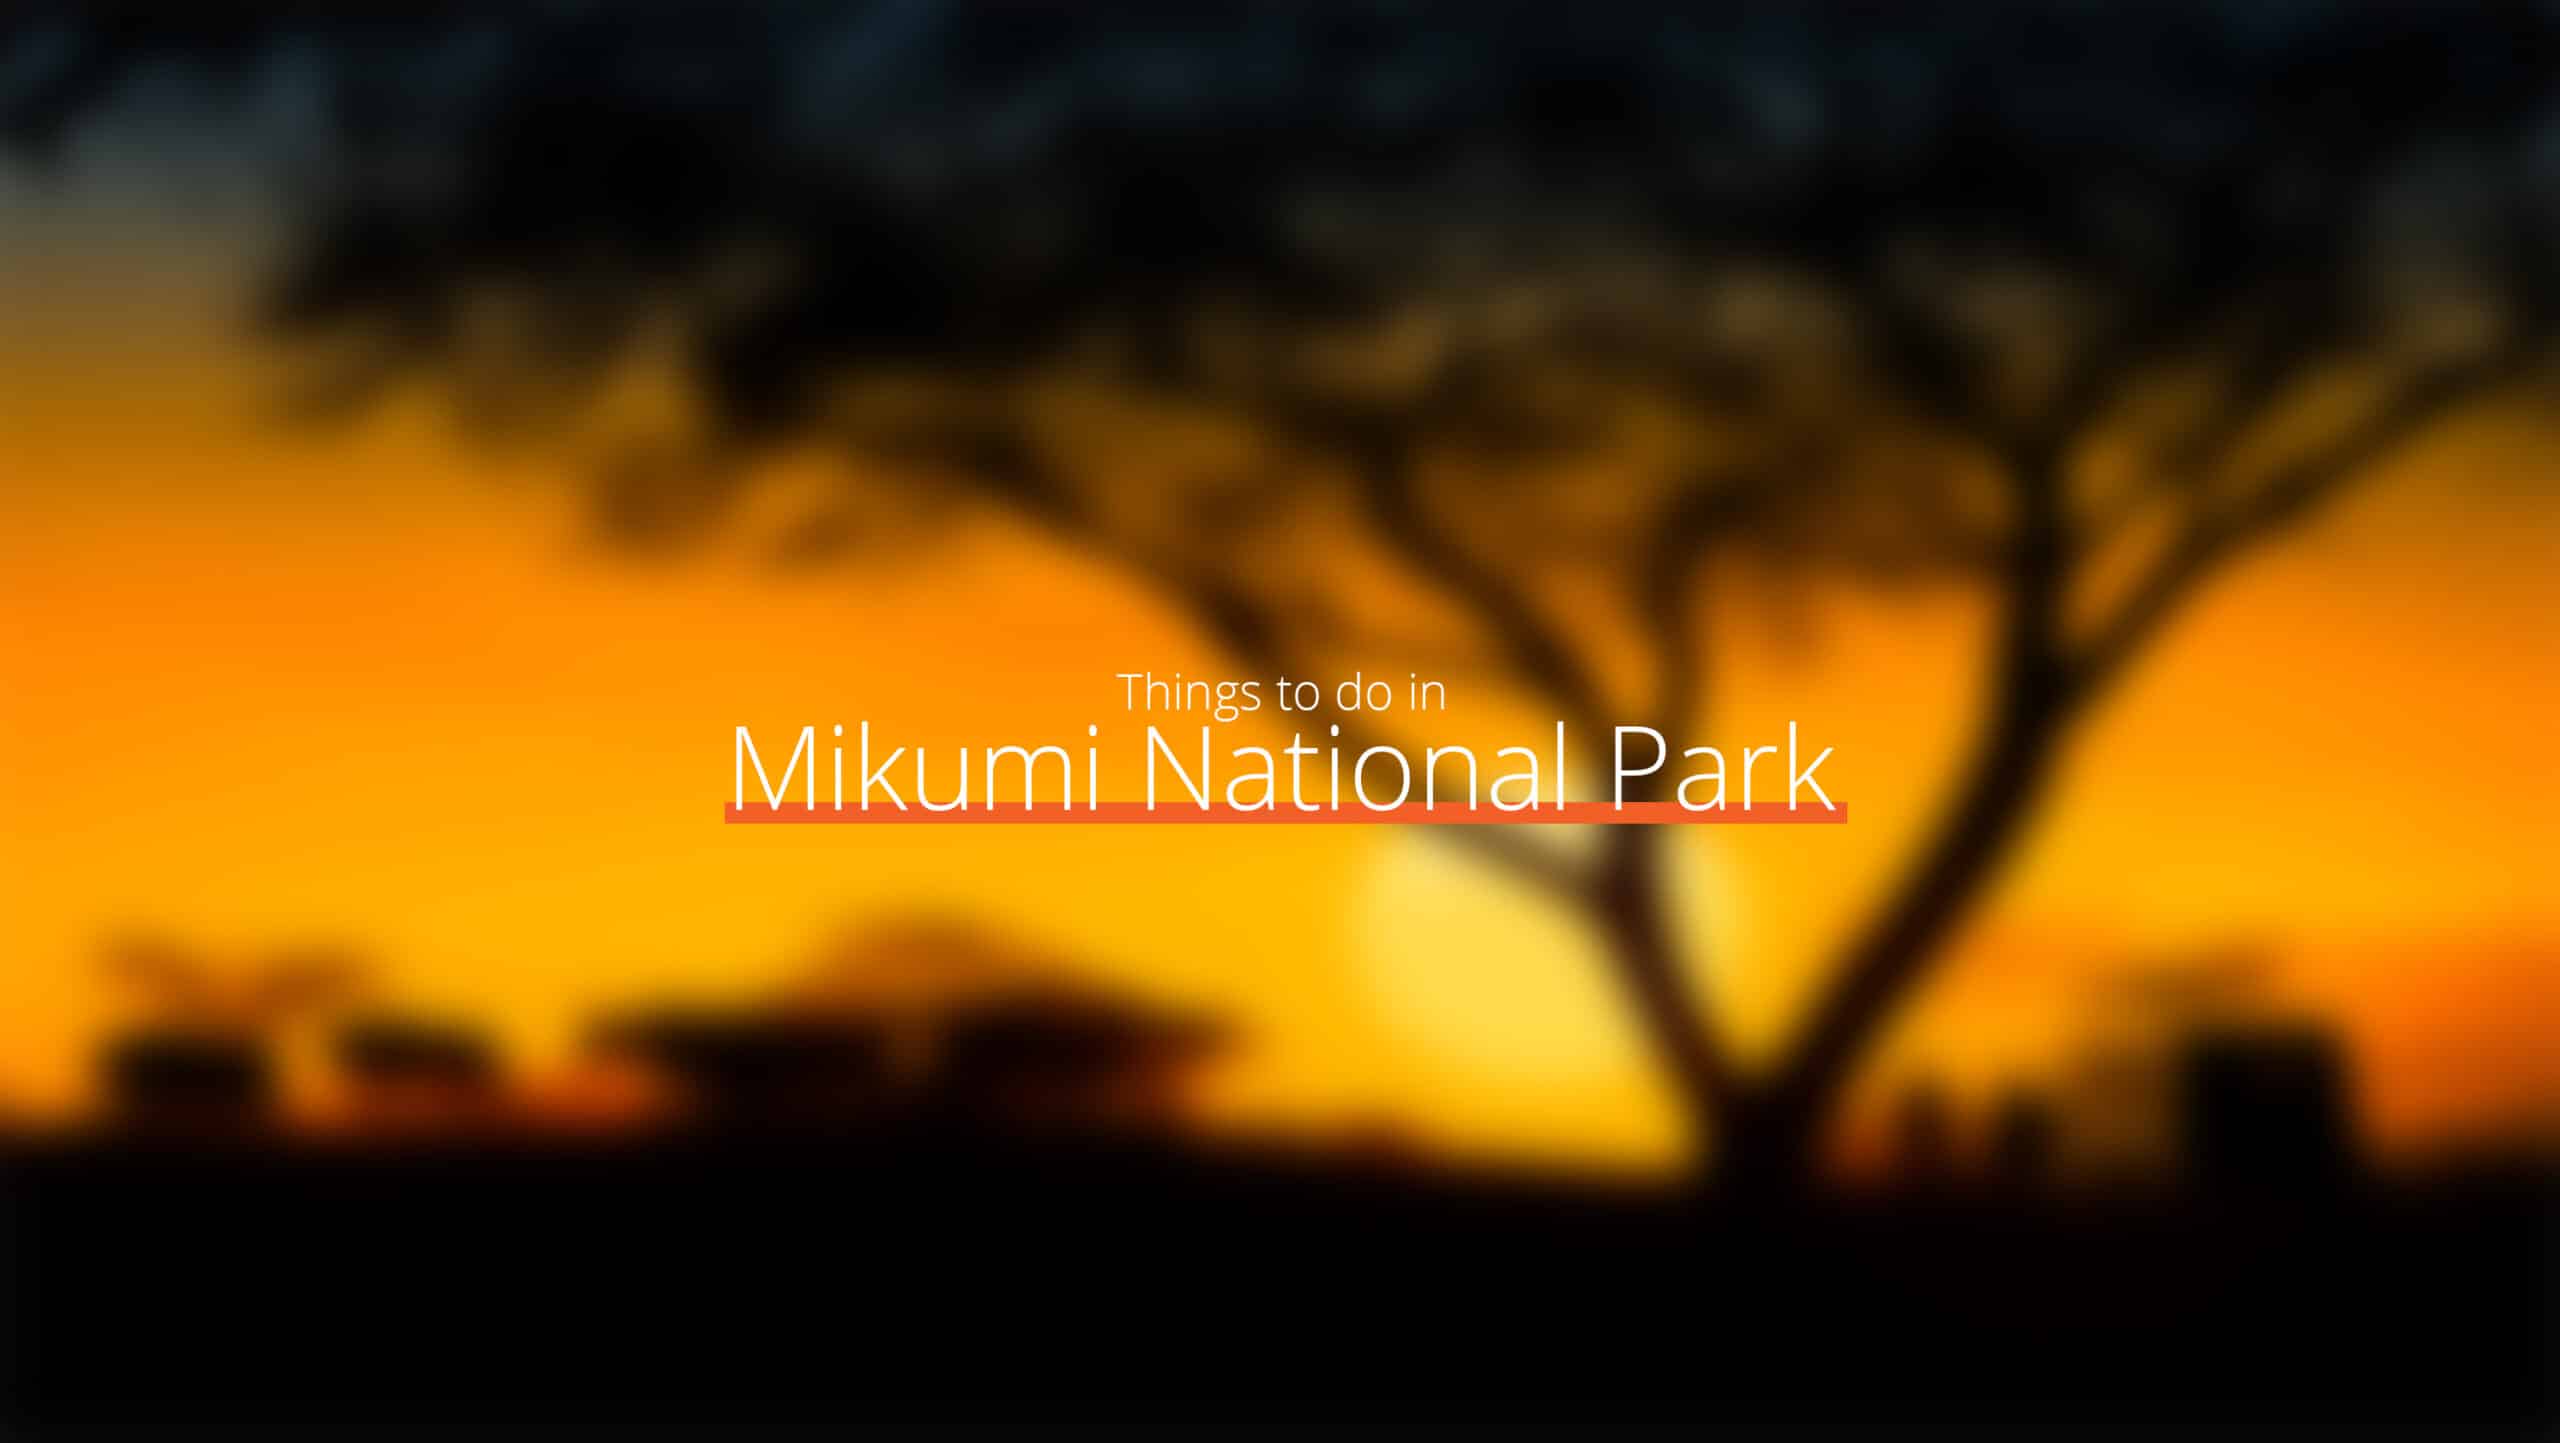 Tanzania - parco nazionale mikumi scala 1 - dove andare